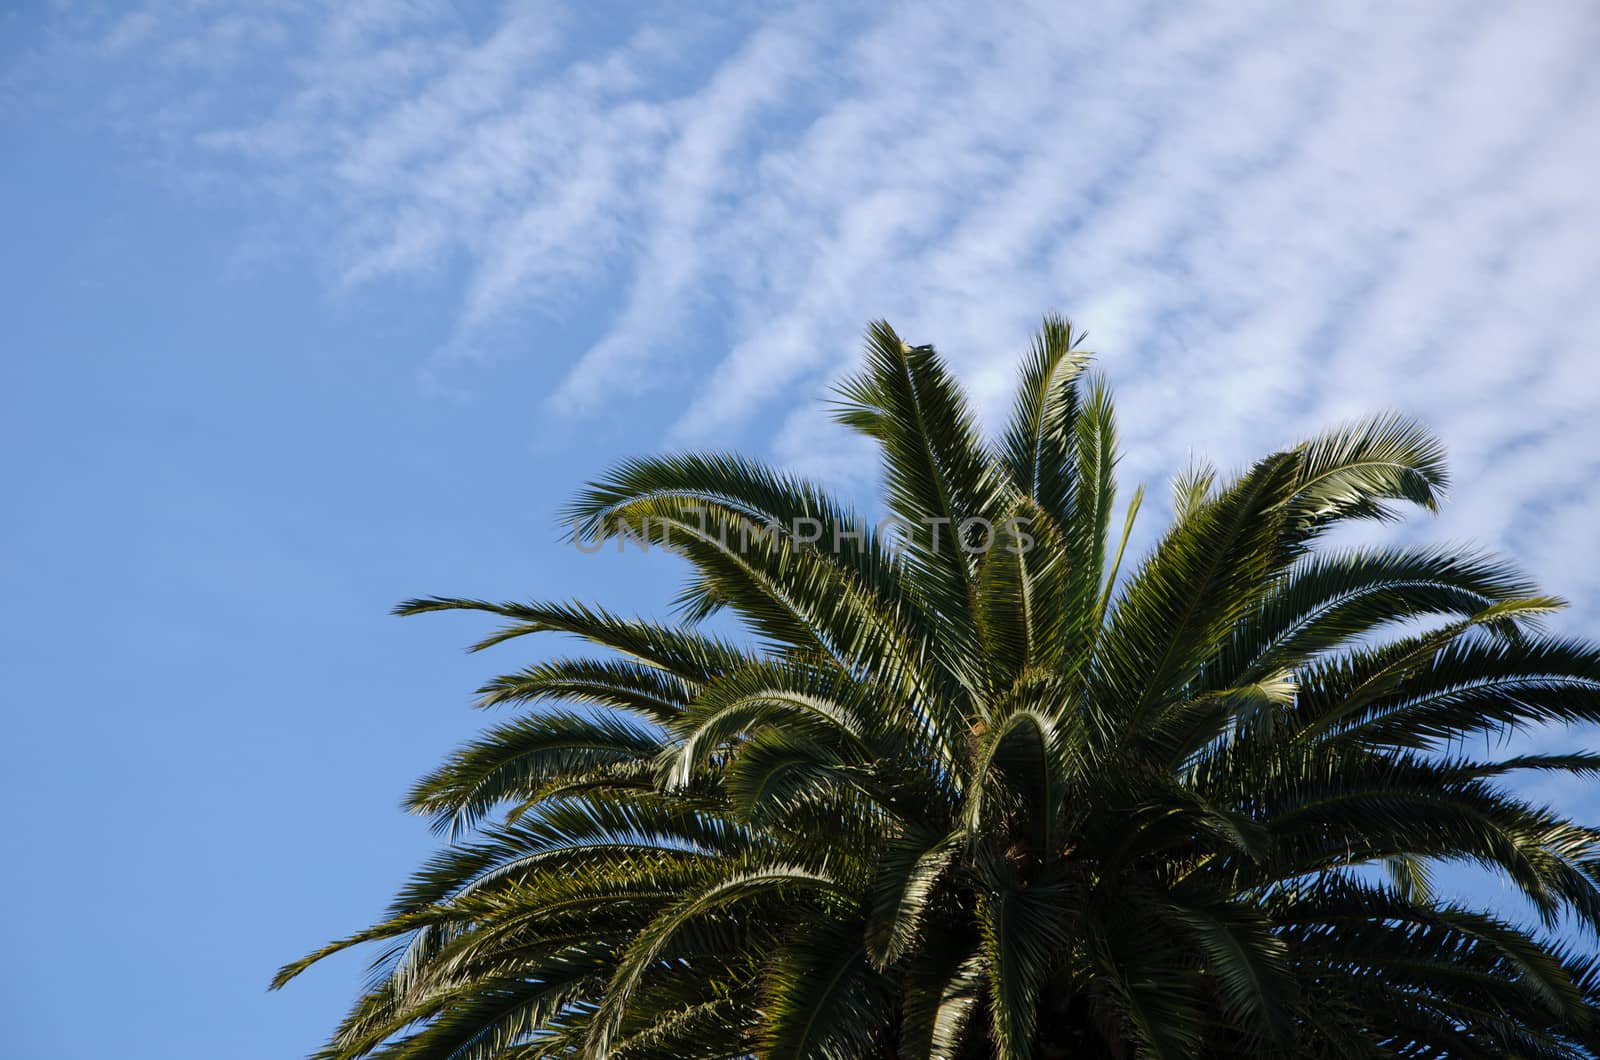 Palm tree with blue sky
